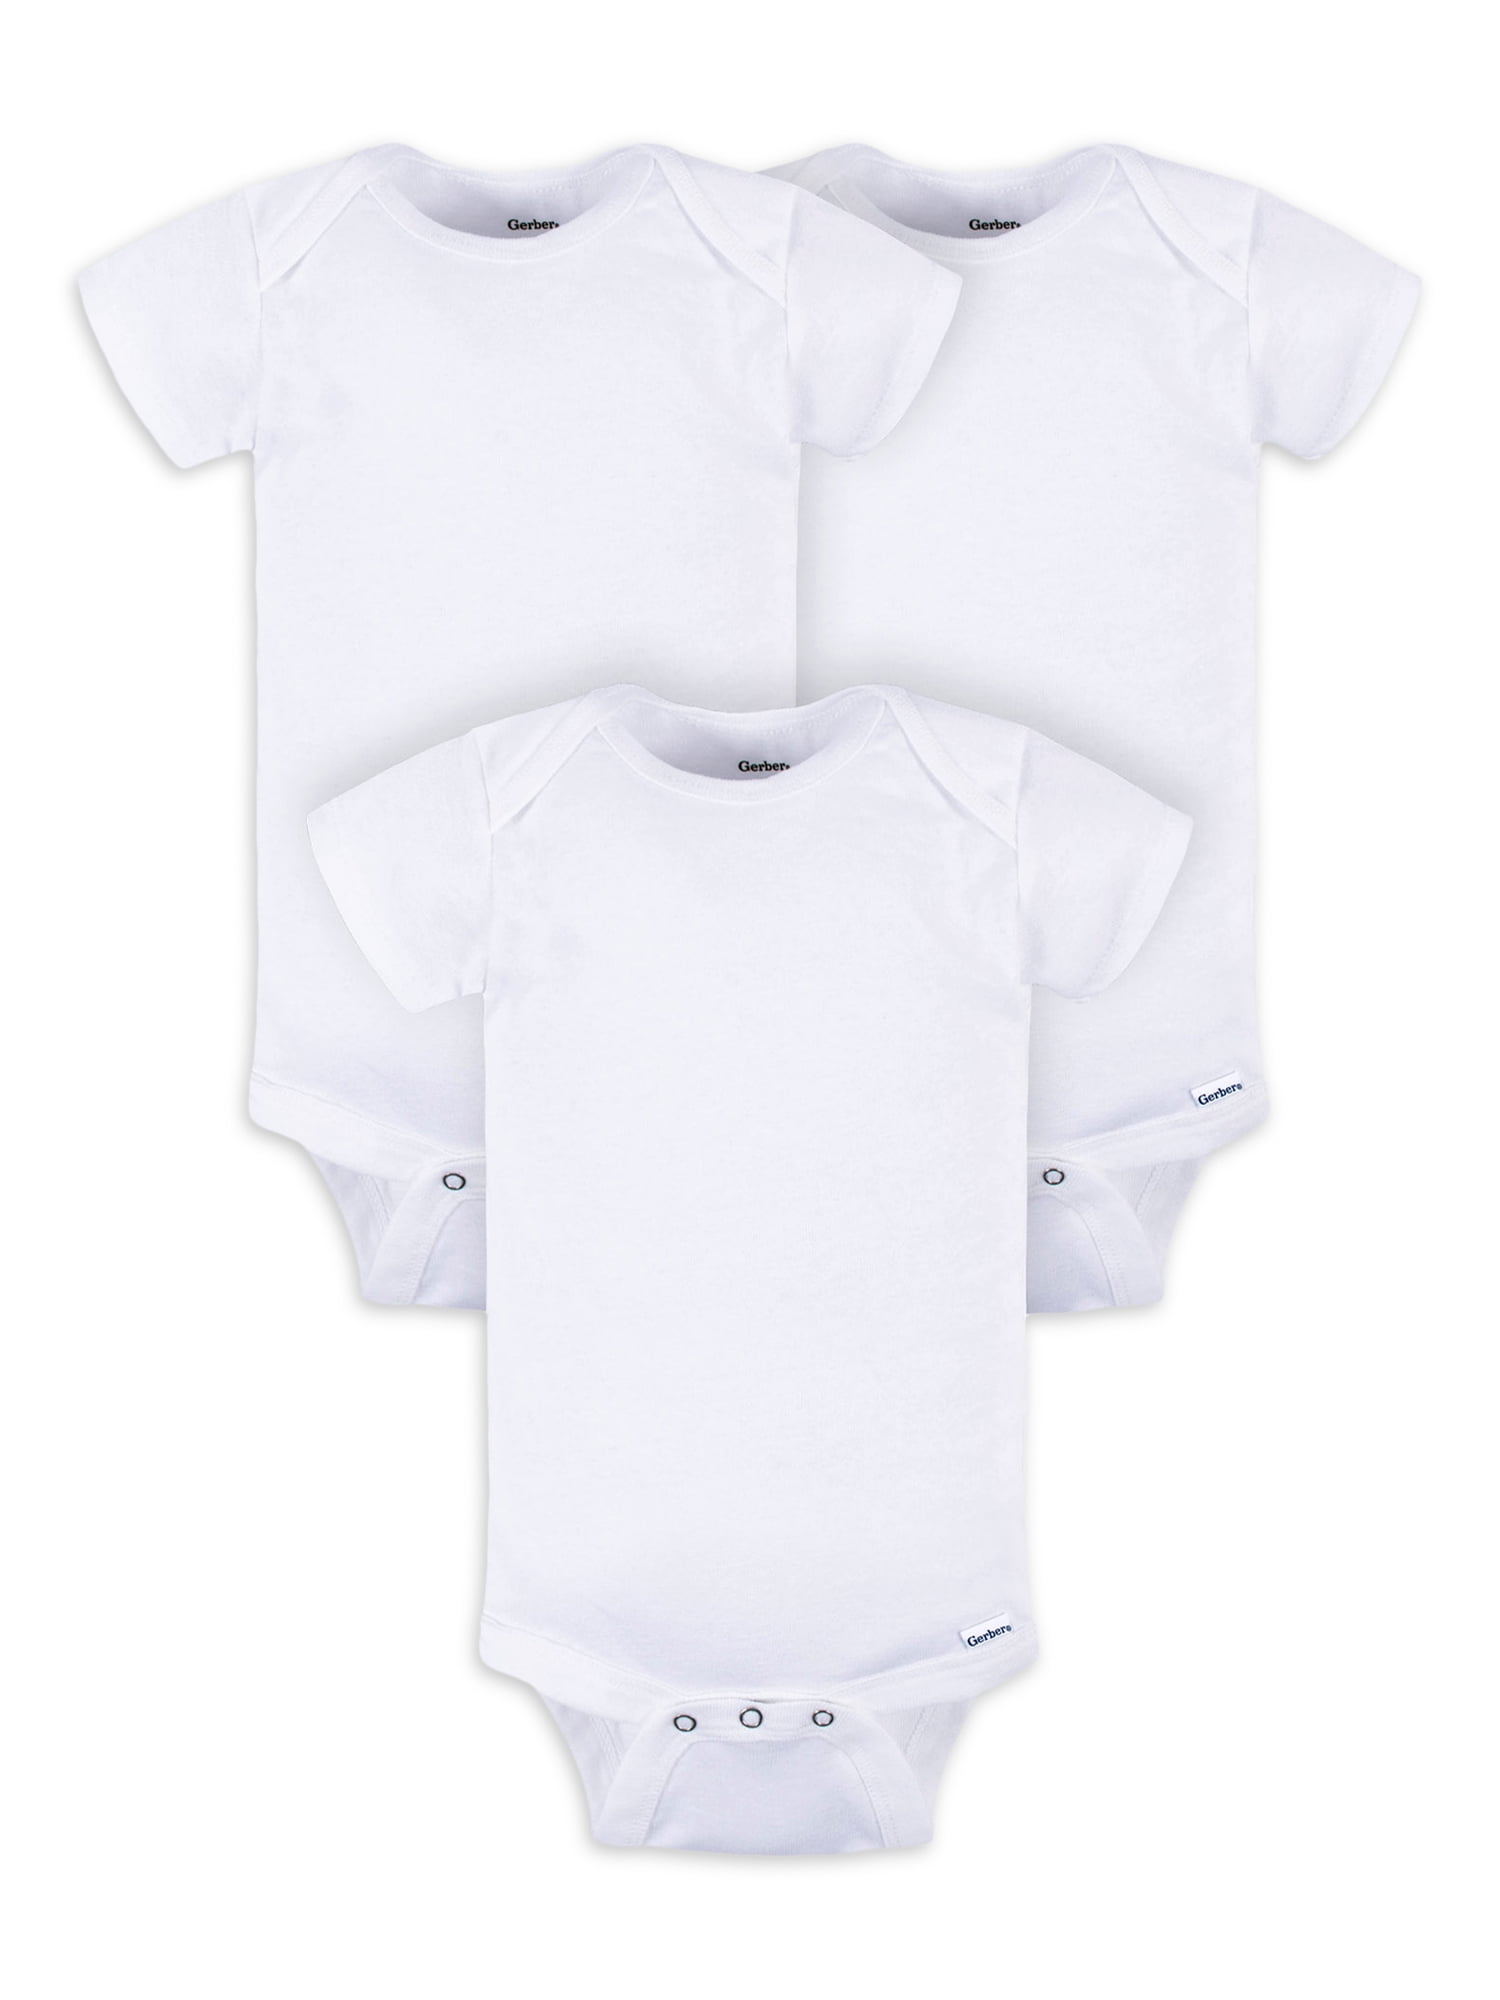 Gerber Baby Boy or Girl Unisex White Short Sleeve Cotton Bodysuit, 3 ...